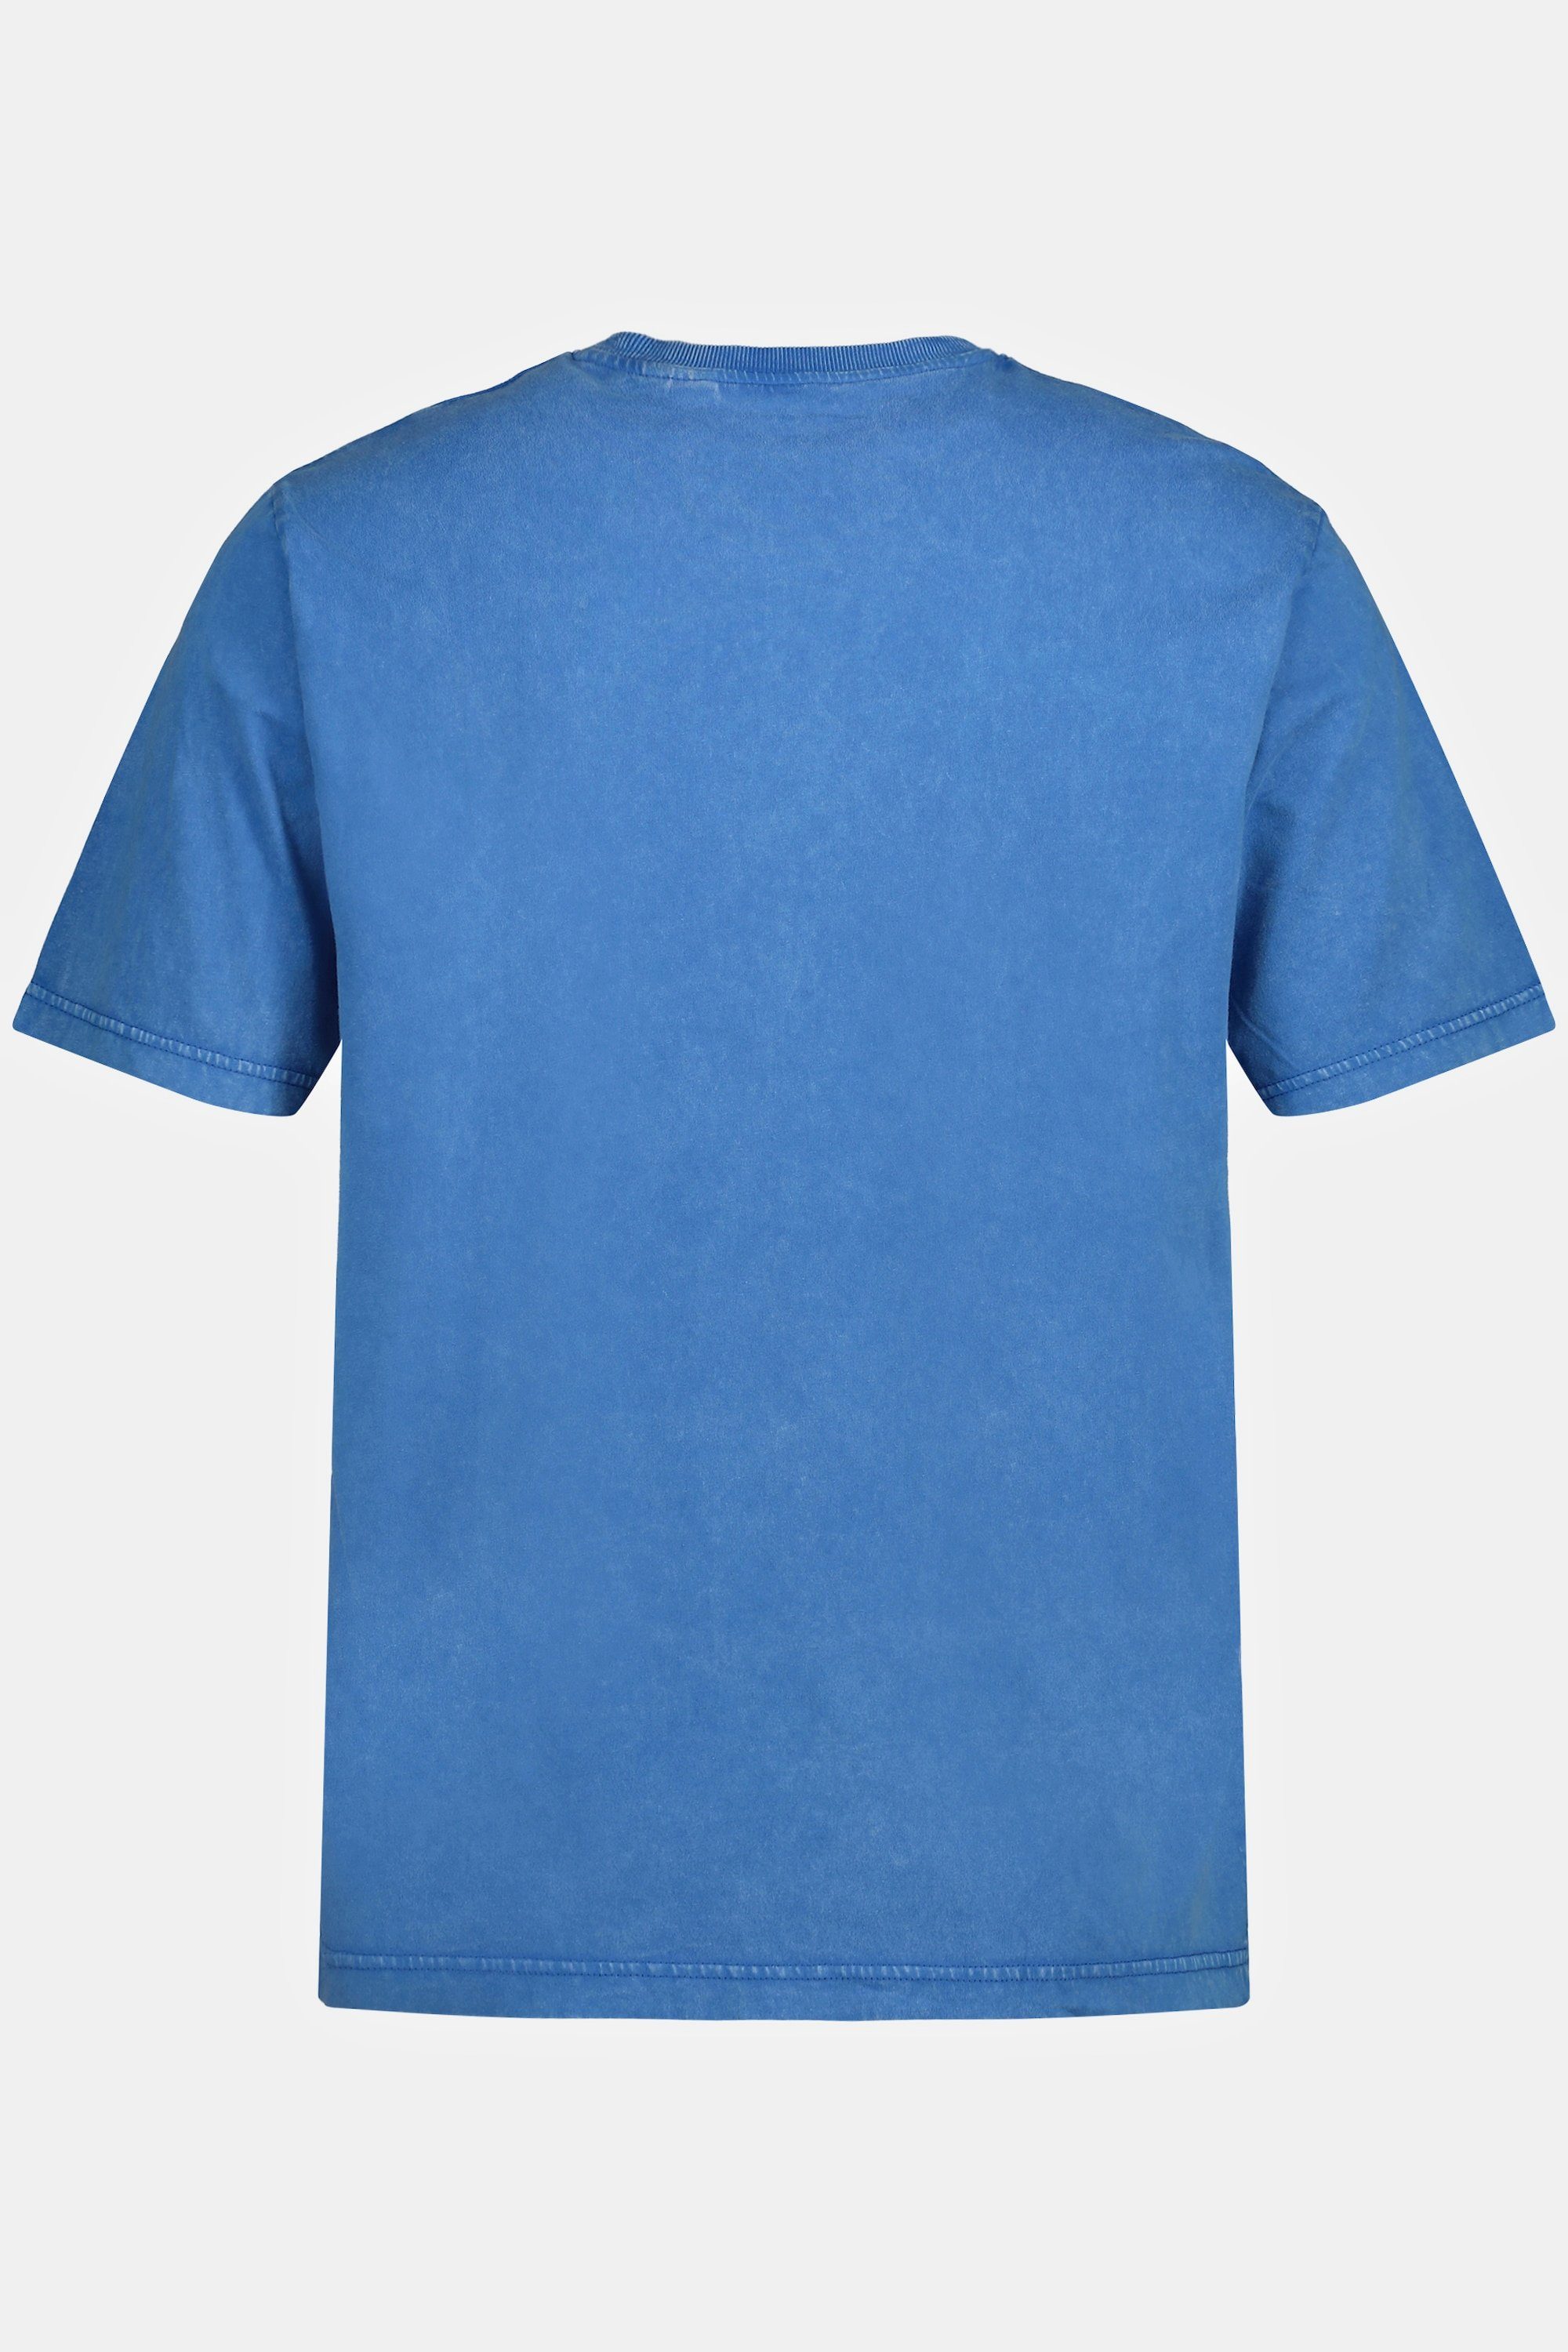 Varsity JP1880 T-Shirt Vintage Halbarm T-Shirt Print Look